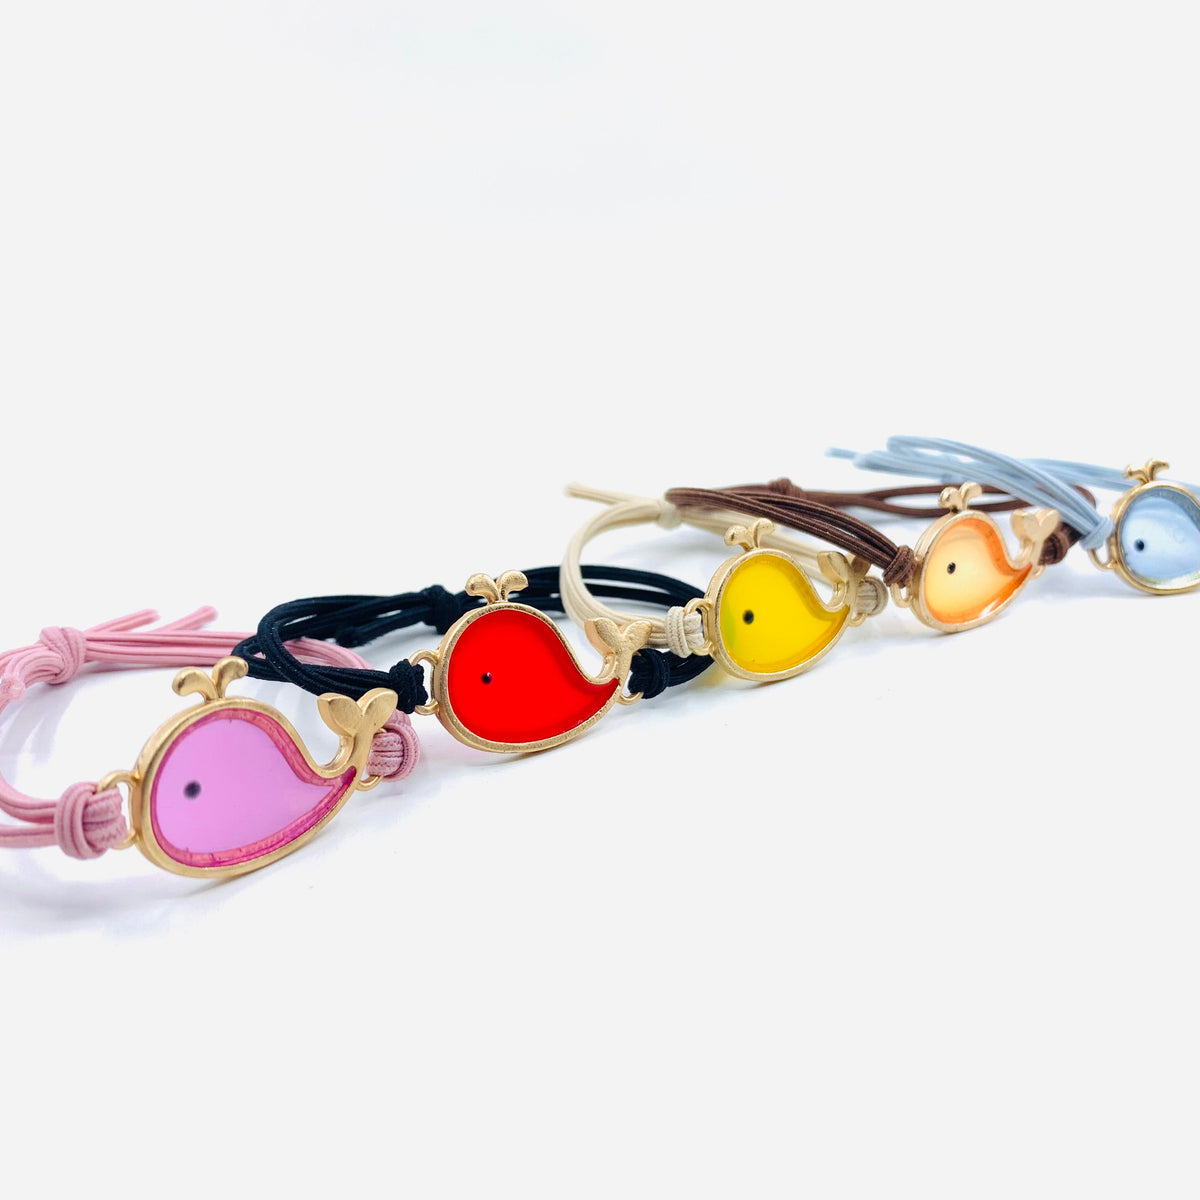 Baby Whale Bracelets Jewelry - 